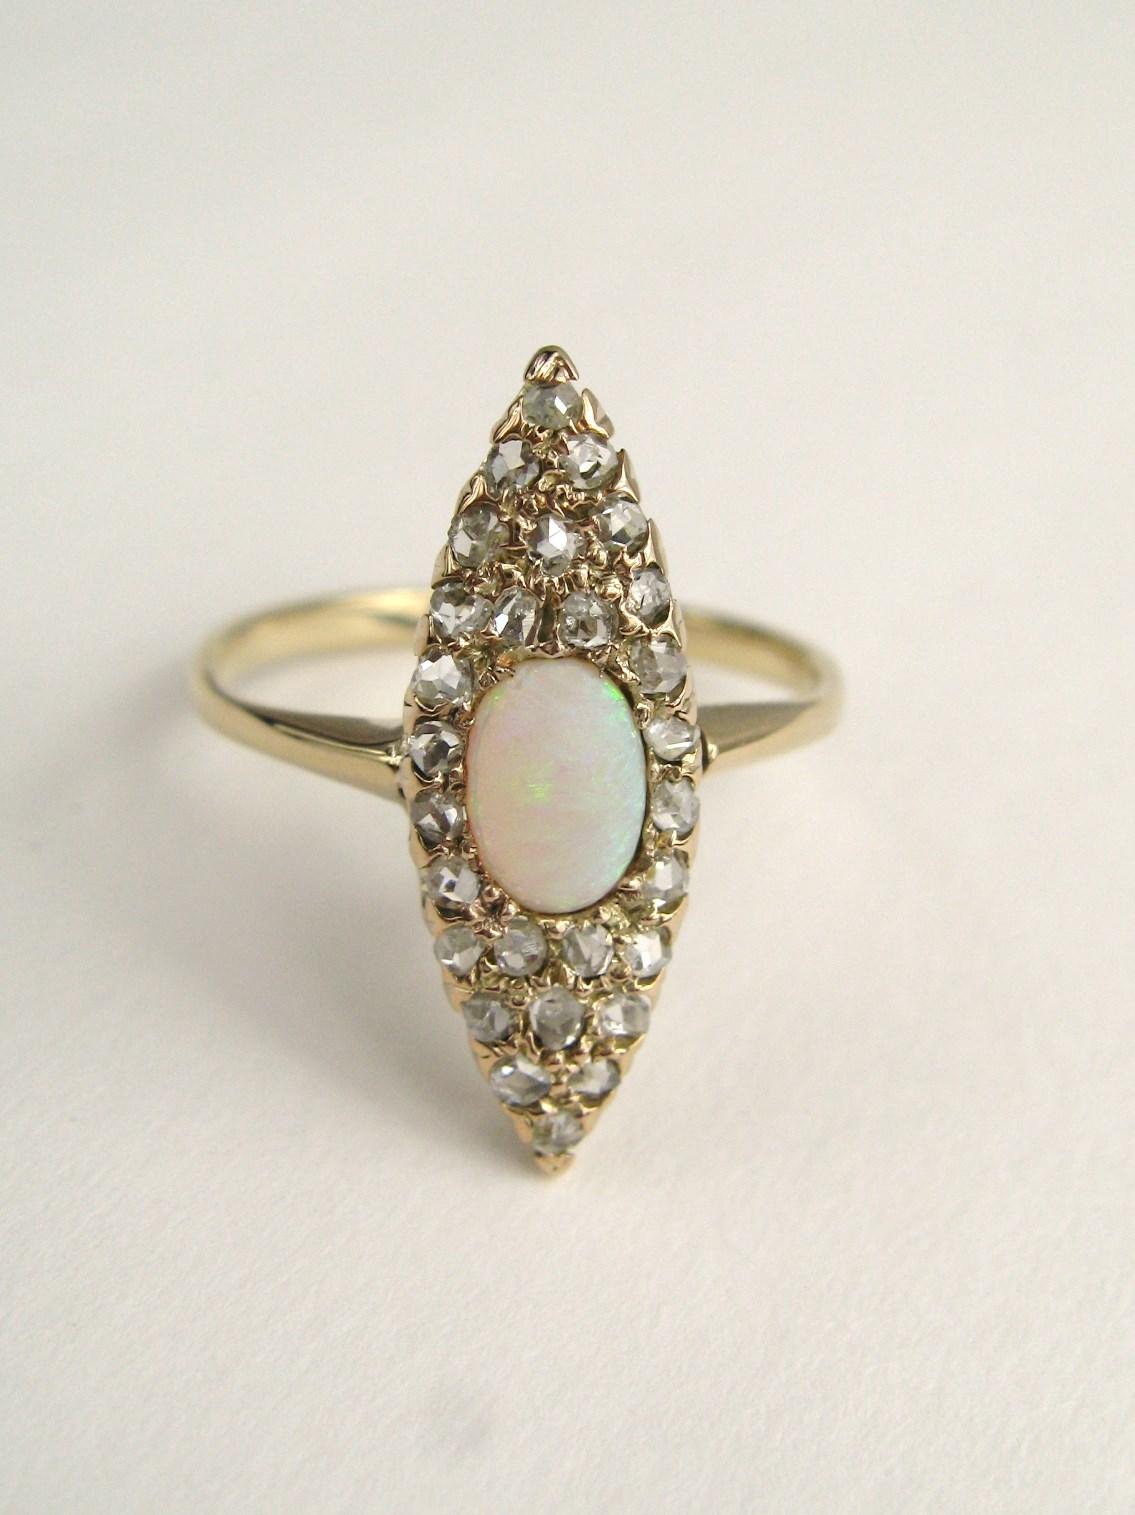 Diese wunderbare antike viktorianische Opal und Rose Cut Diamond Ring ist in 14K Gold gesetzt. Der Ring misst 0,78